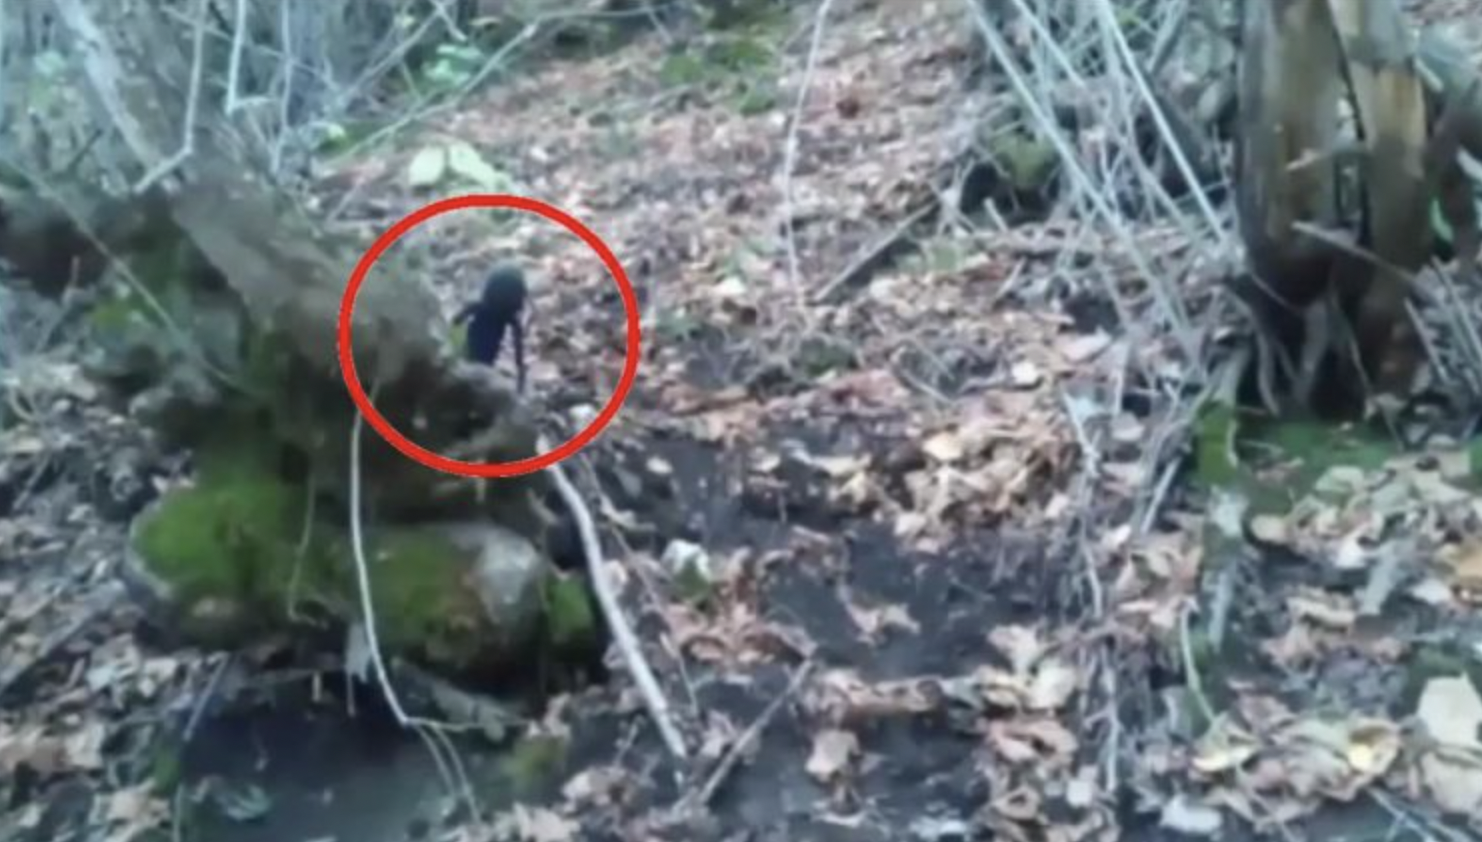 La cámara captó accidentalmente a una extraña criatura que se cree que es un extraterrestre en un bosque en Rusia (video)